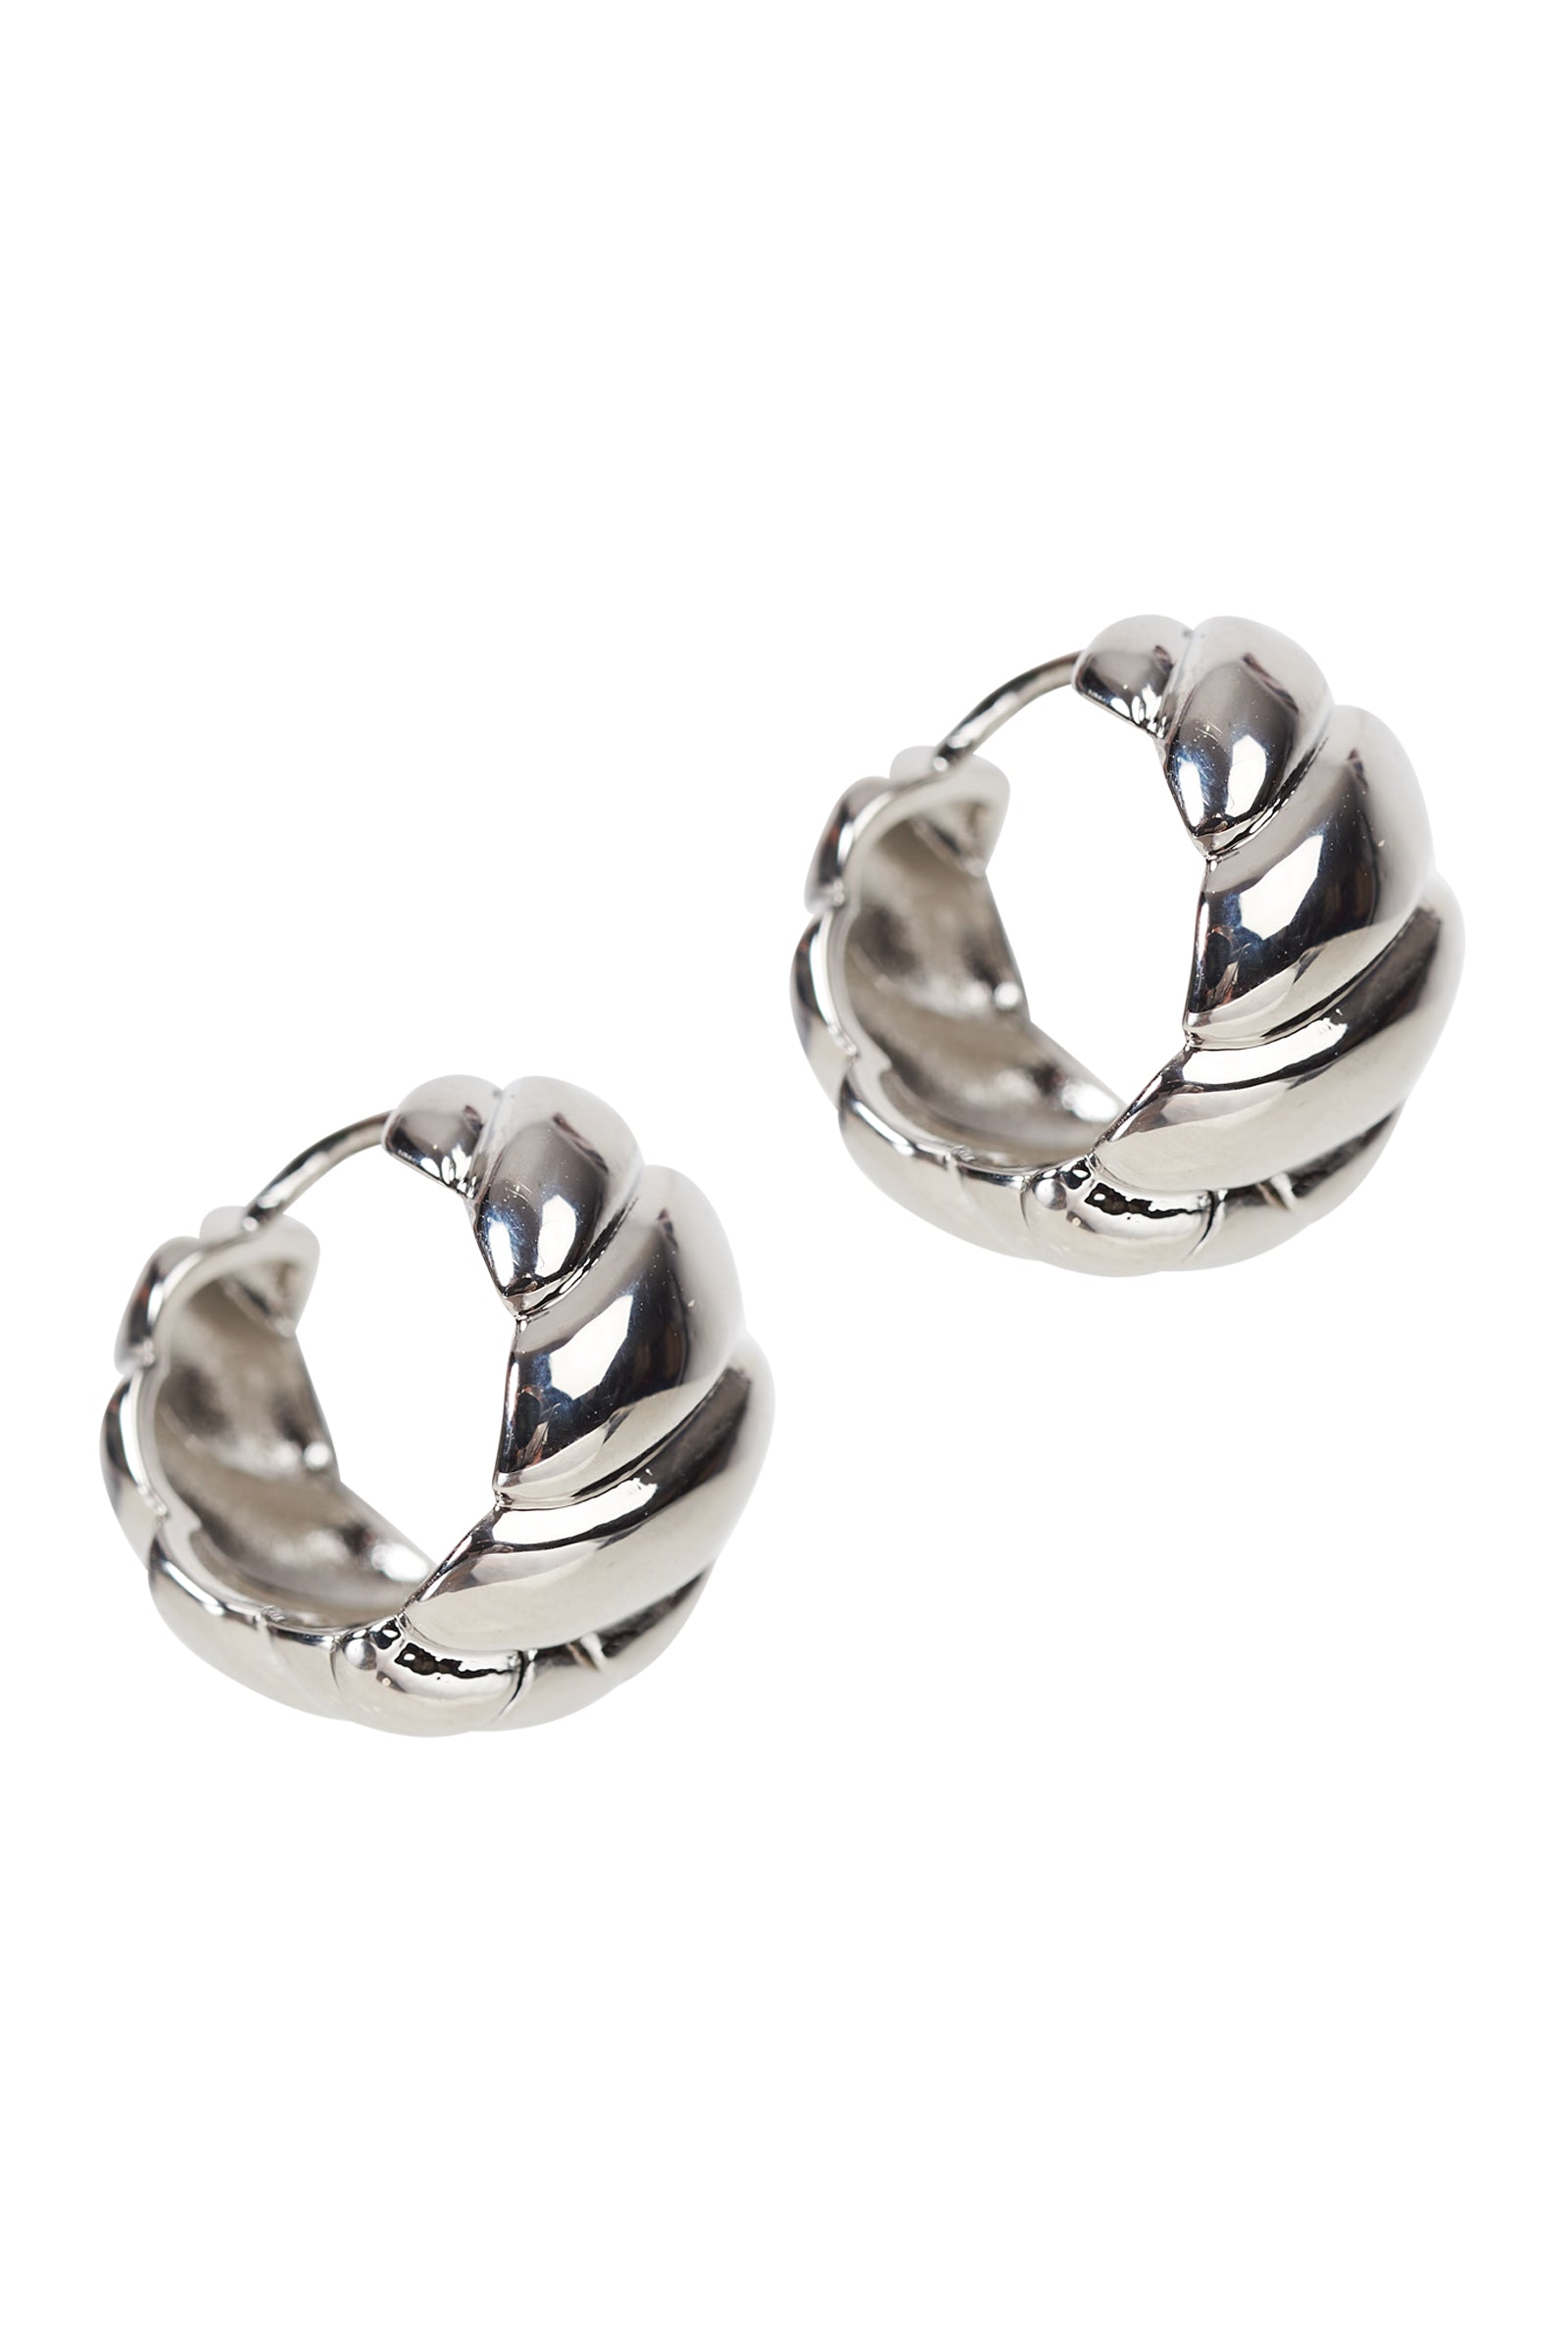 Mayan Earring - Silver Twist - eb&ive Earring